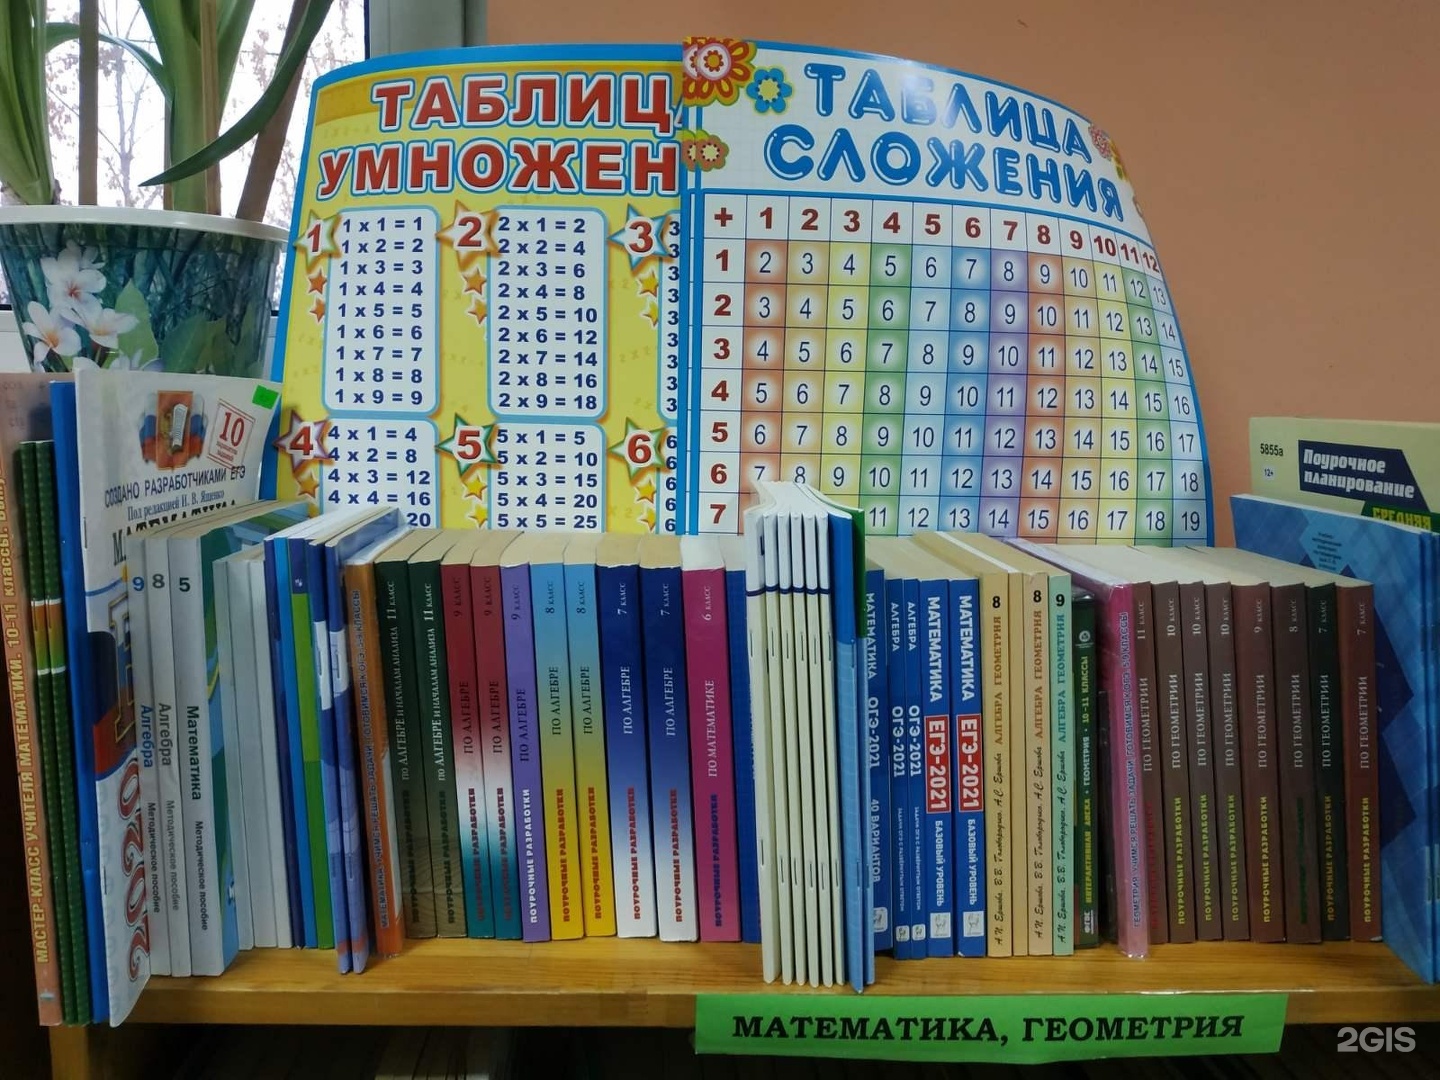 Купить книгу в иркутске